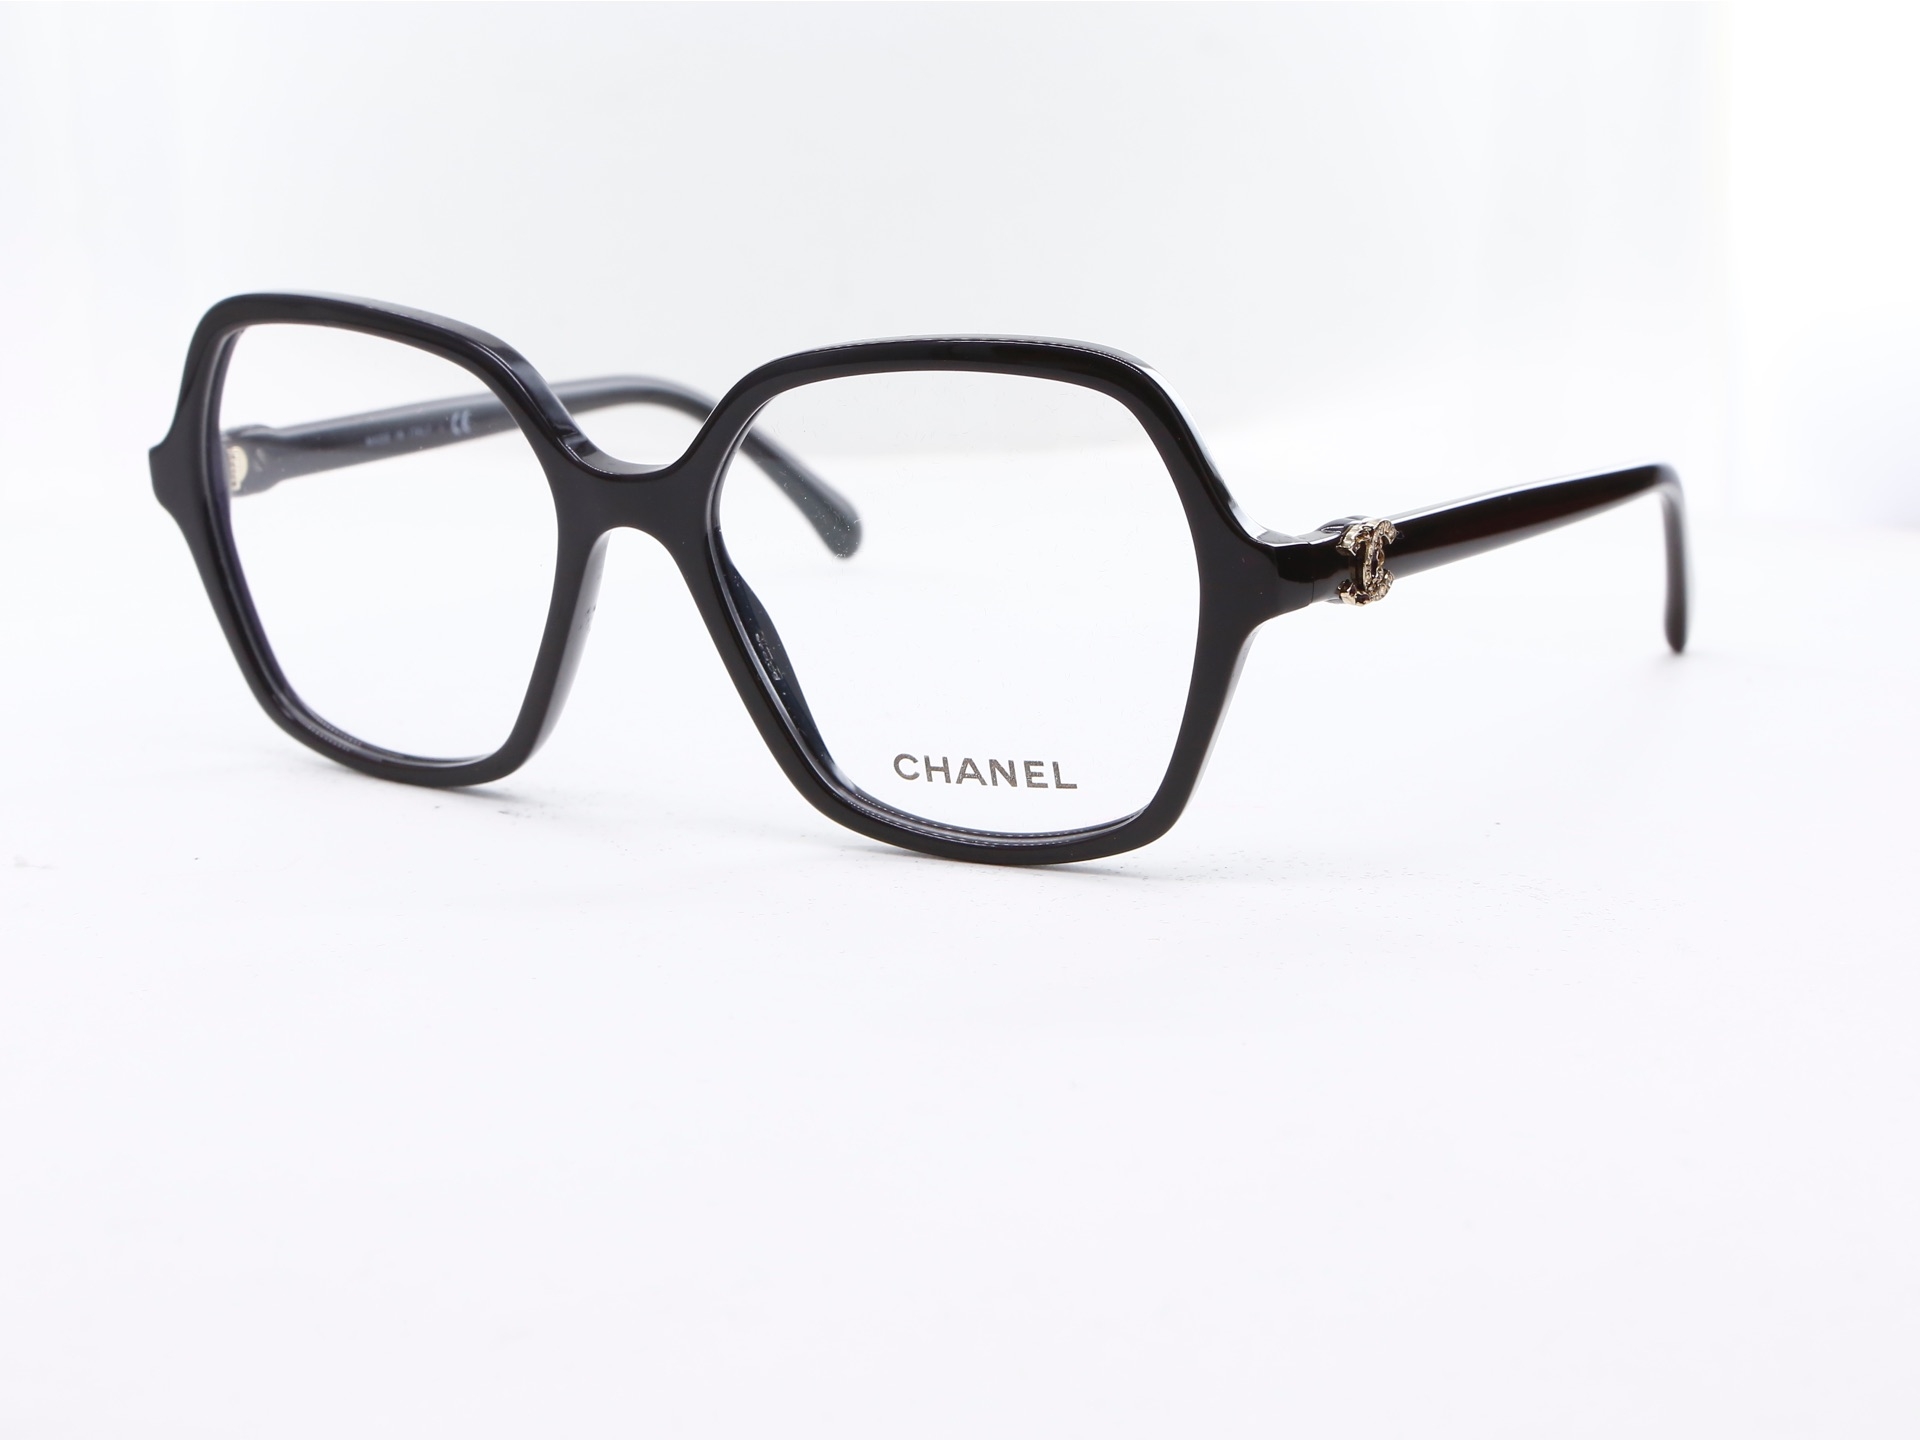 Chanel - ref: 85625